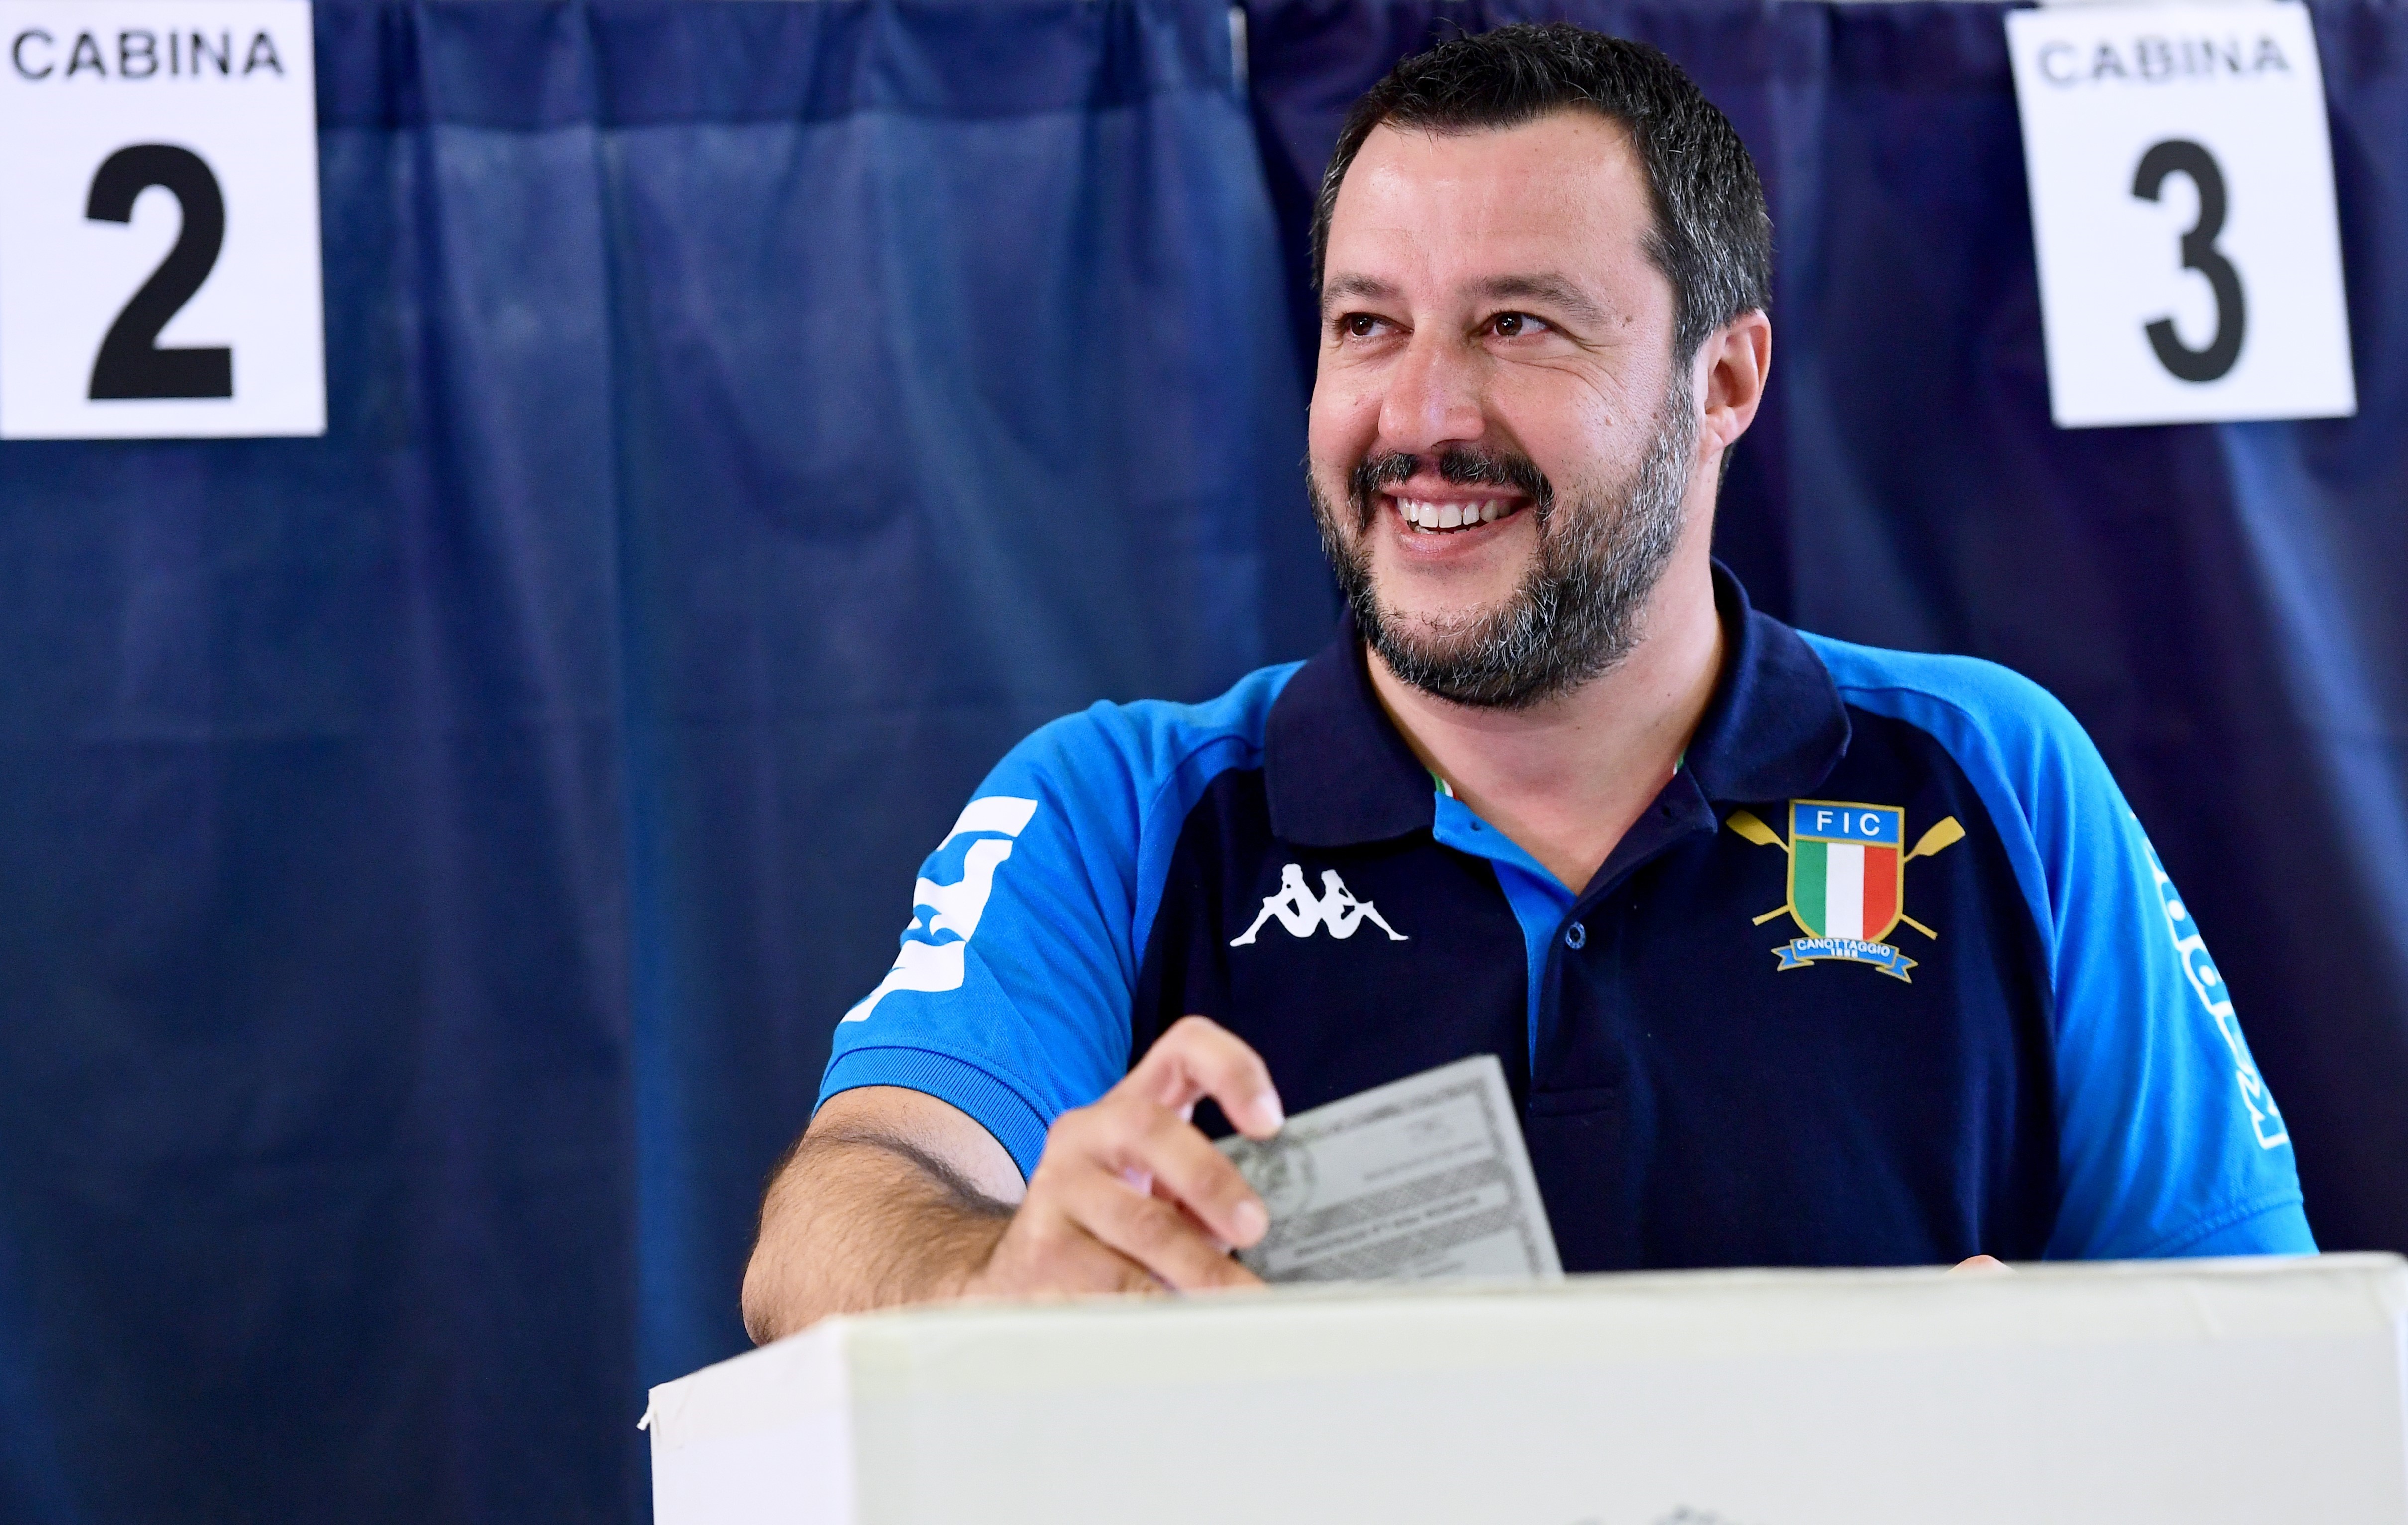 Đảng cực hữu Liên đoàn của Phó Thủ tướng Italy Matteo Salvini (trong ảnh) đã nổi lên trở thành chính đảng lớn nhất trong cuộc bầu cử Nghị viện châu Âu (EP) tổ chức ở nước này ngày 26/5/2019. (Nguồn: AFP/TTXVN)